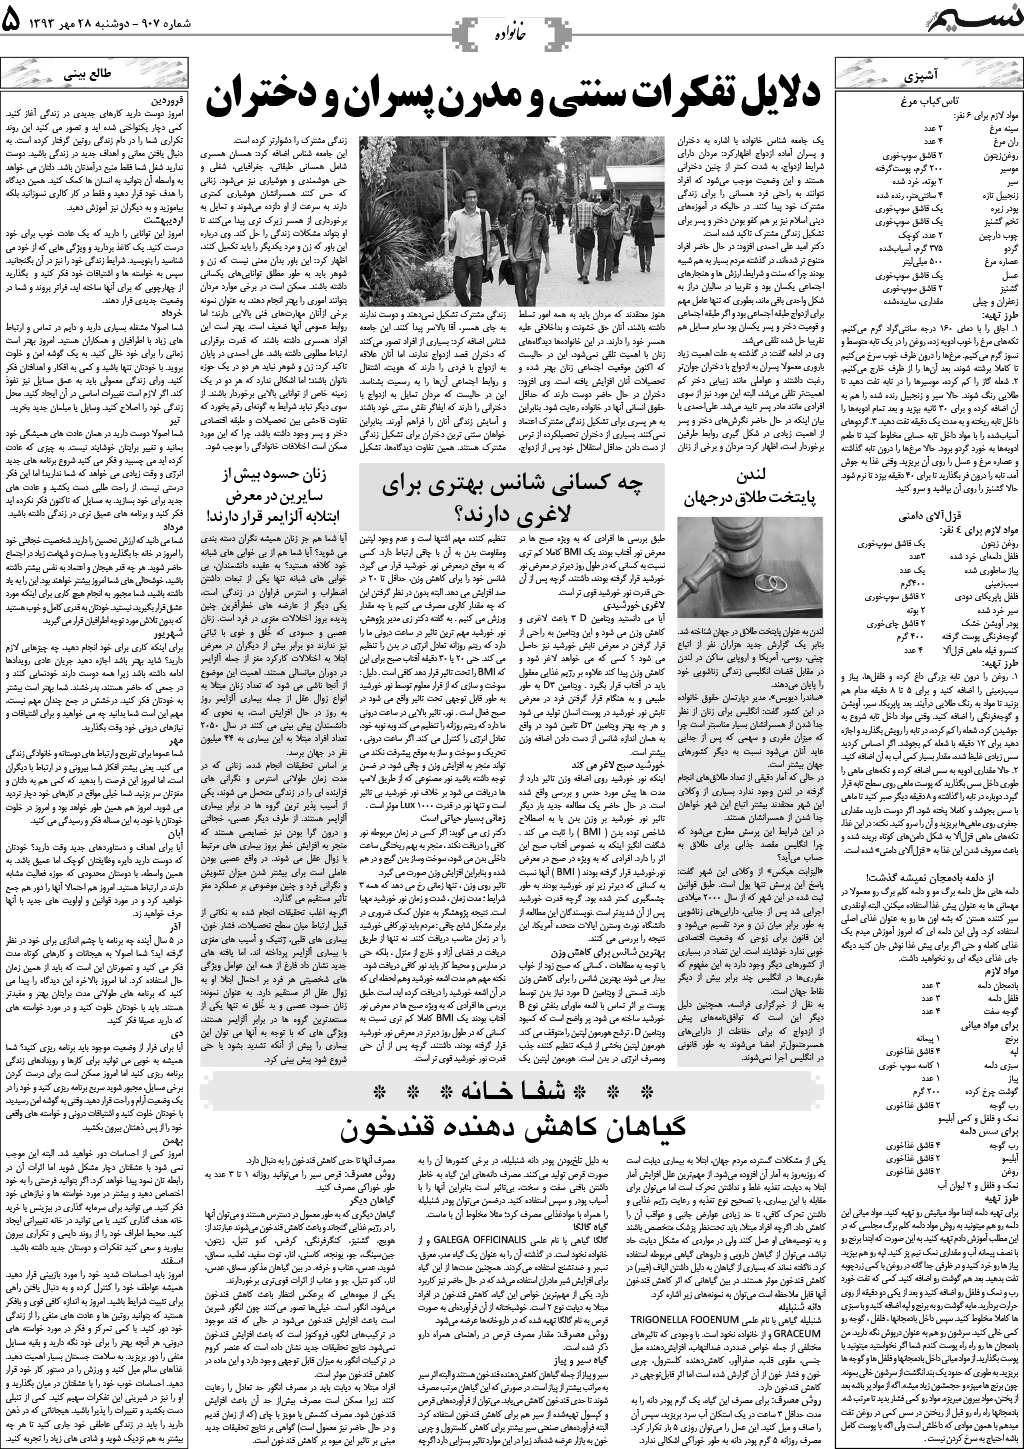 صفحه خانواده روزنامه نسیم شماره 907